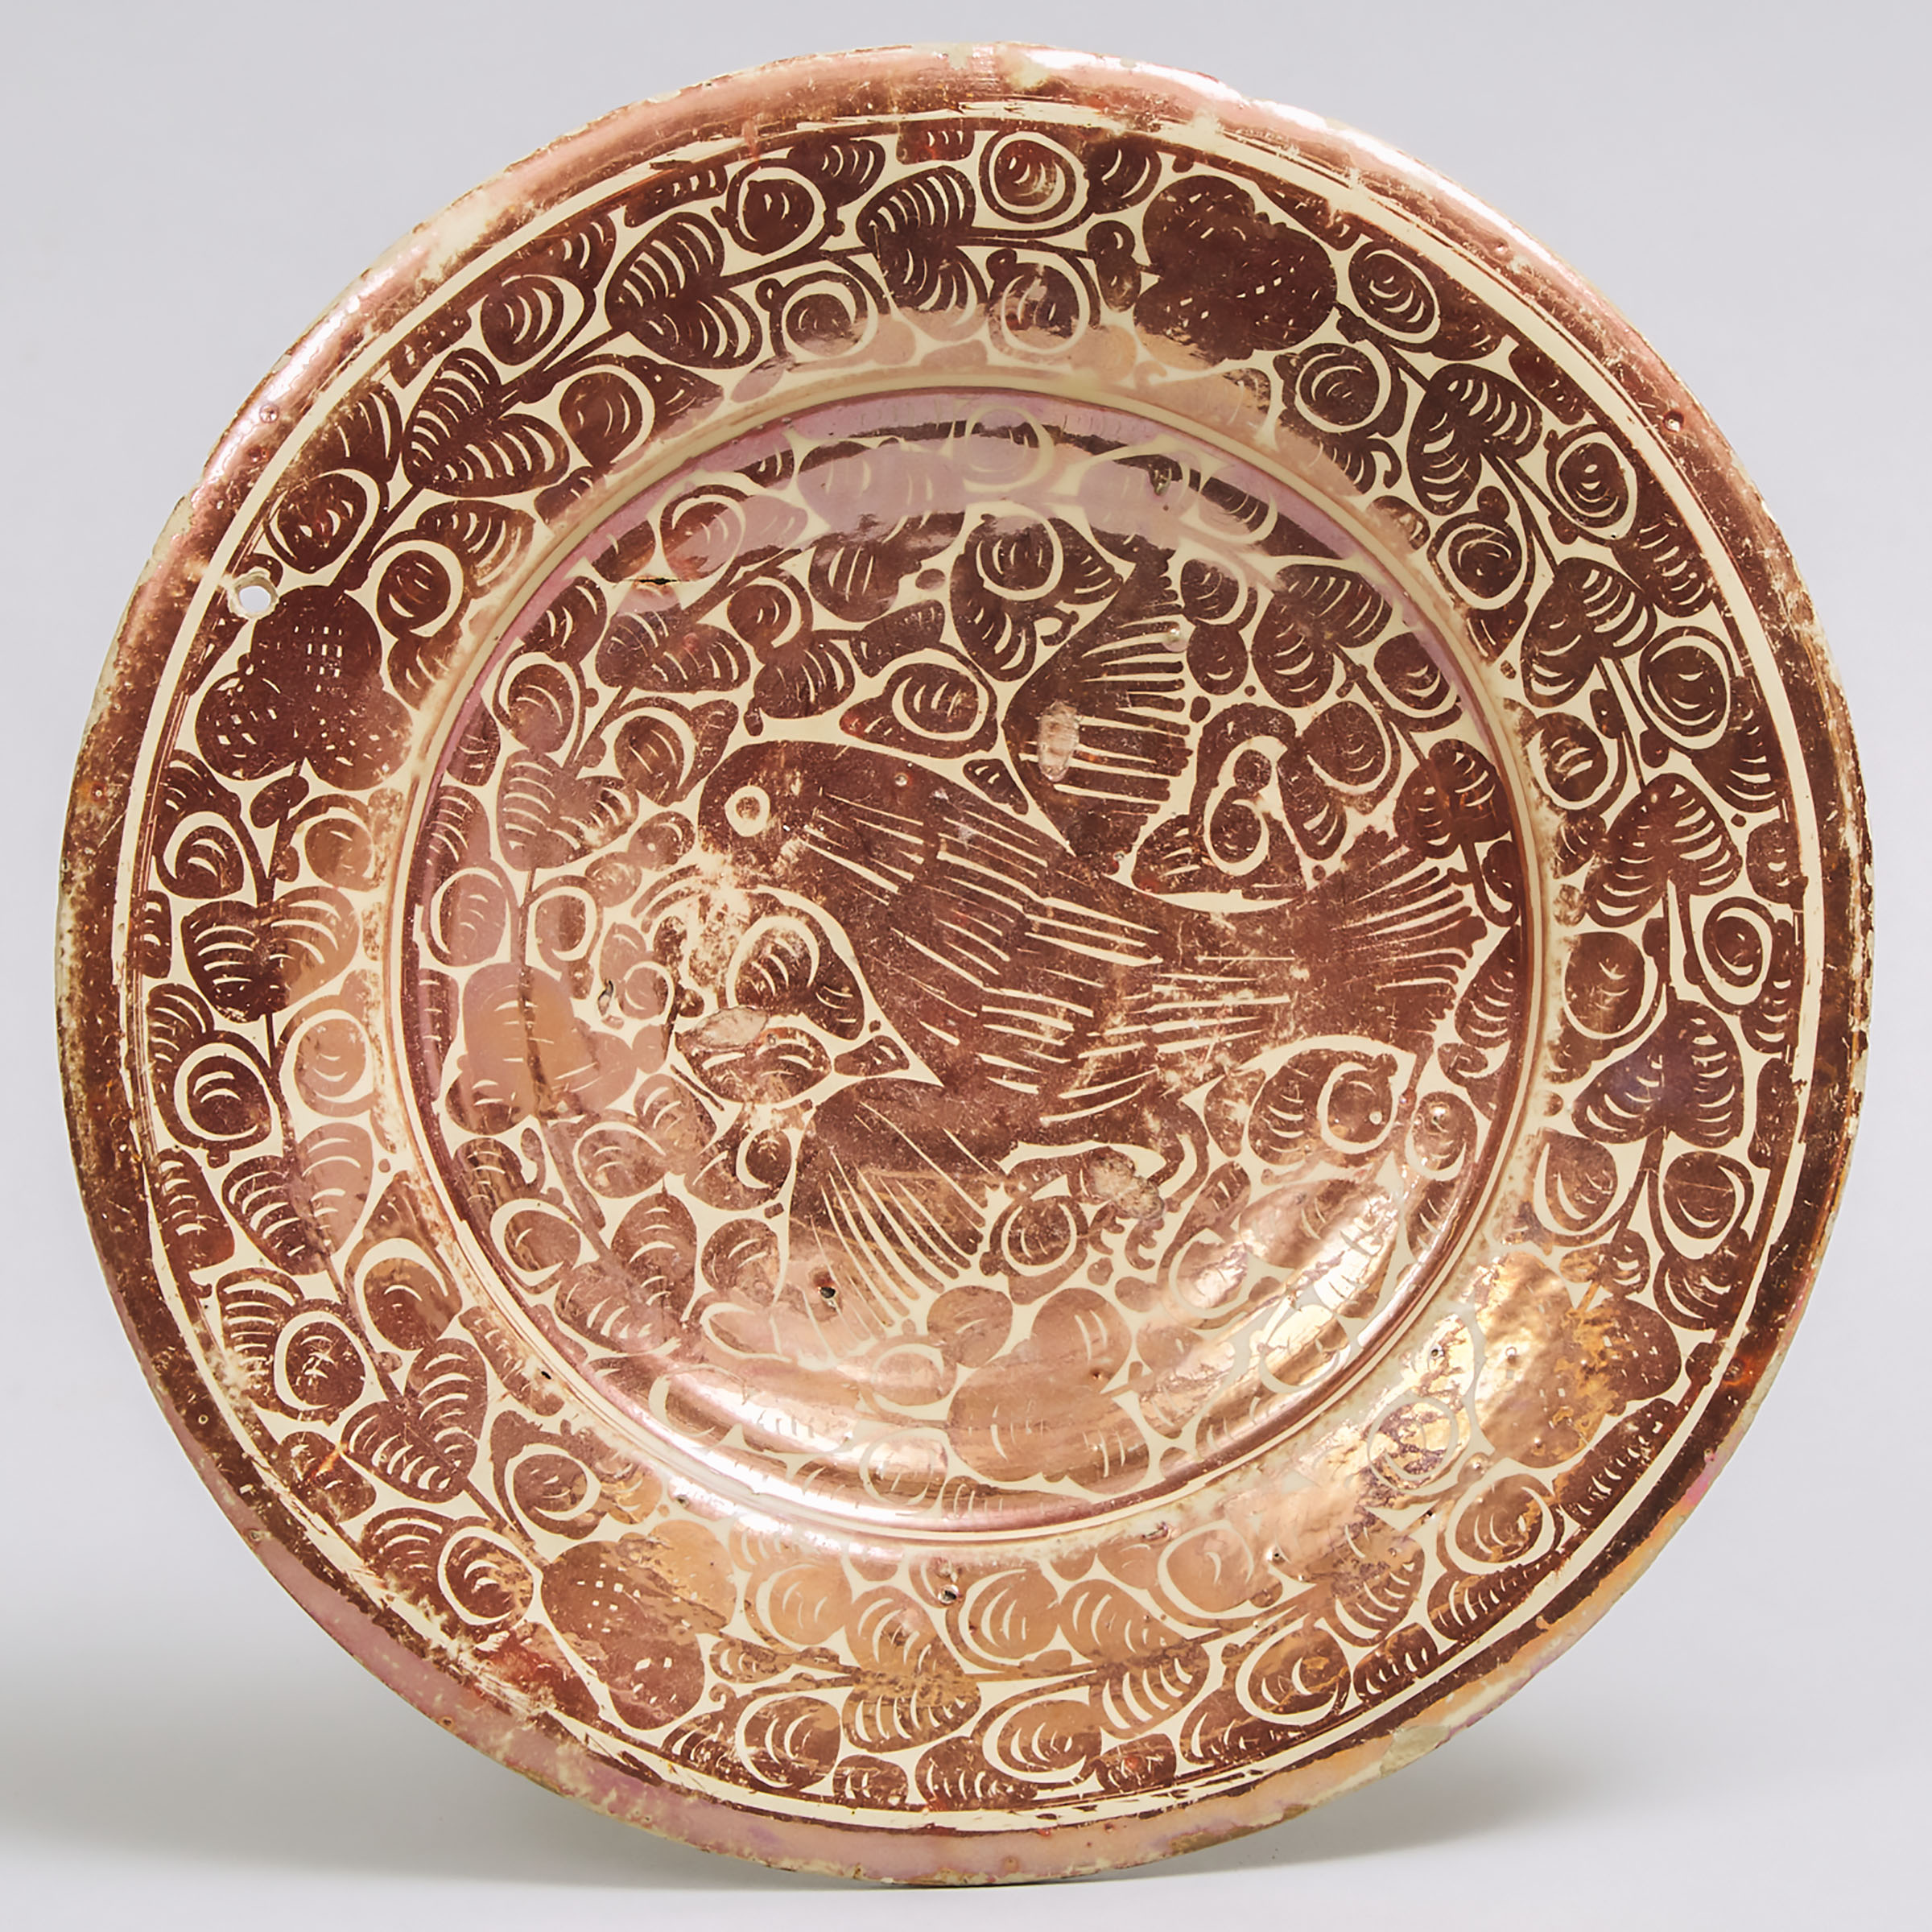 Hispano-Moresque Copper Lustre Pottery Dish, 17th century